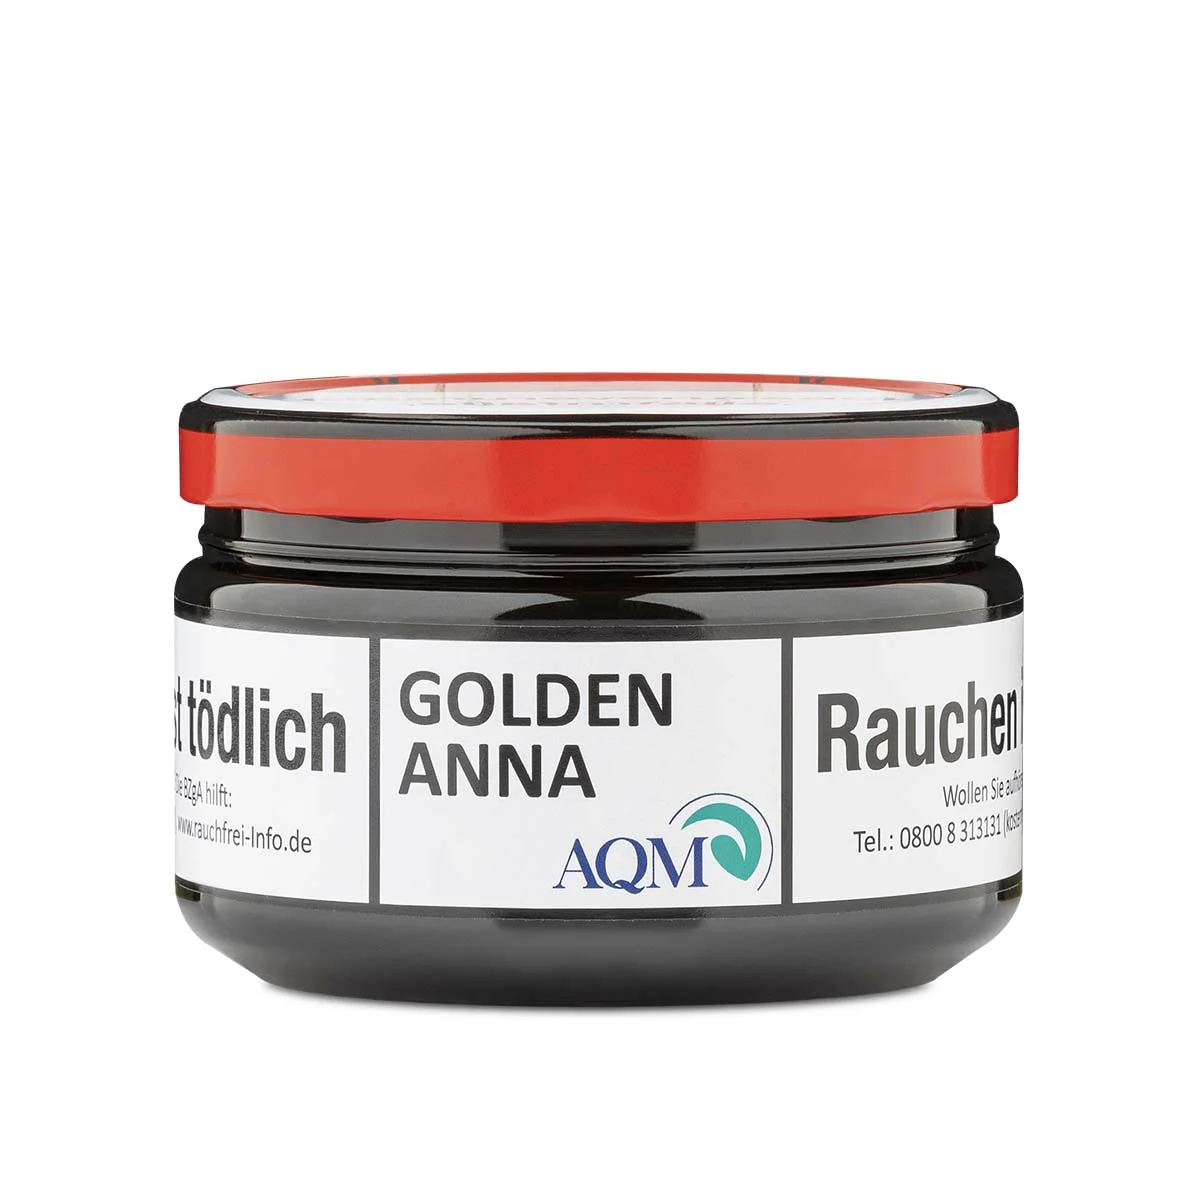 Aqua Mentha Pfeifentabak 100g Golden Anna